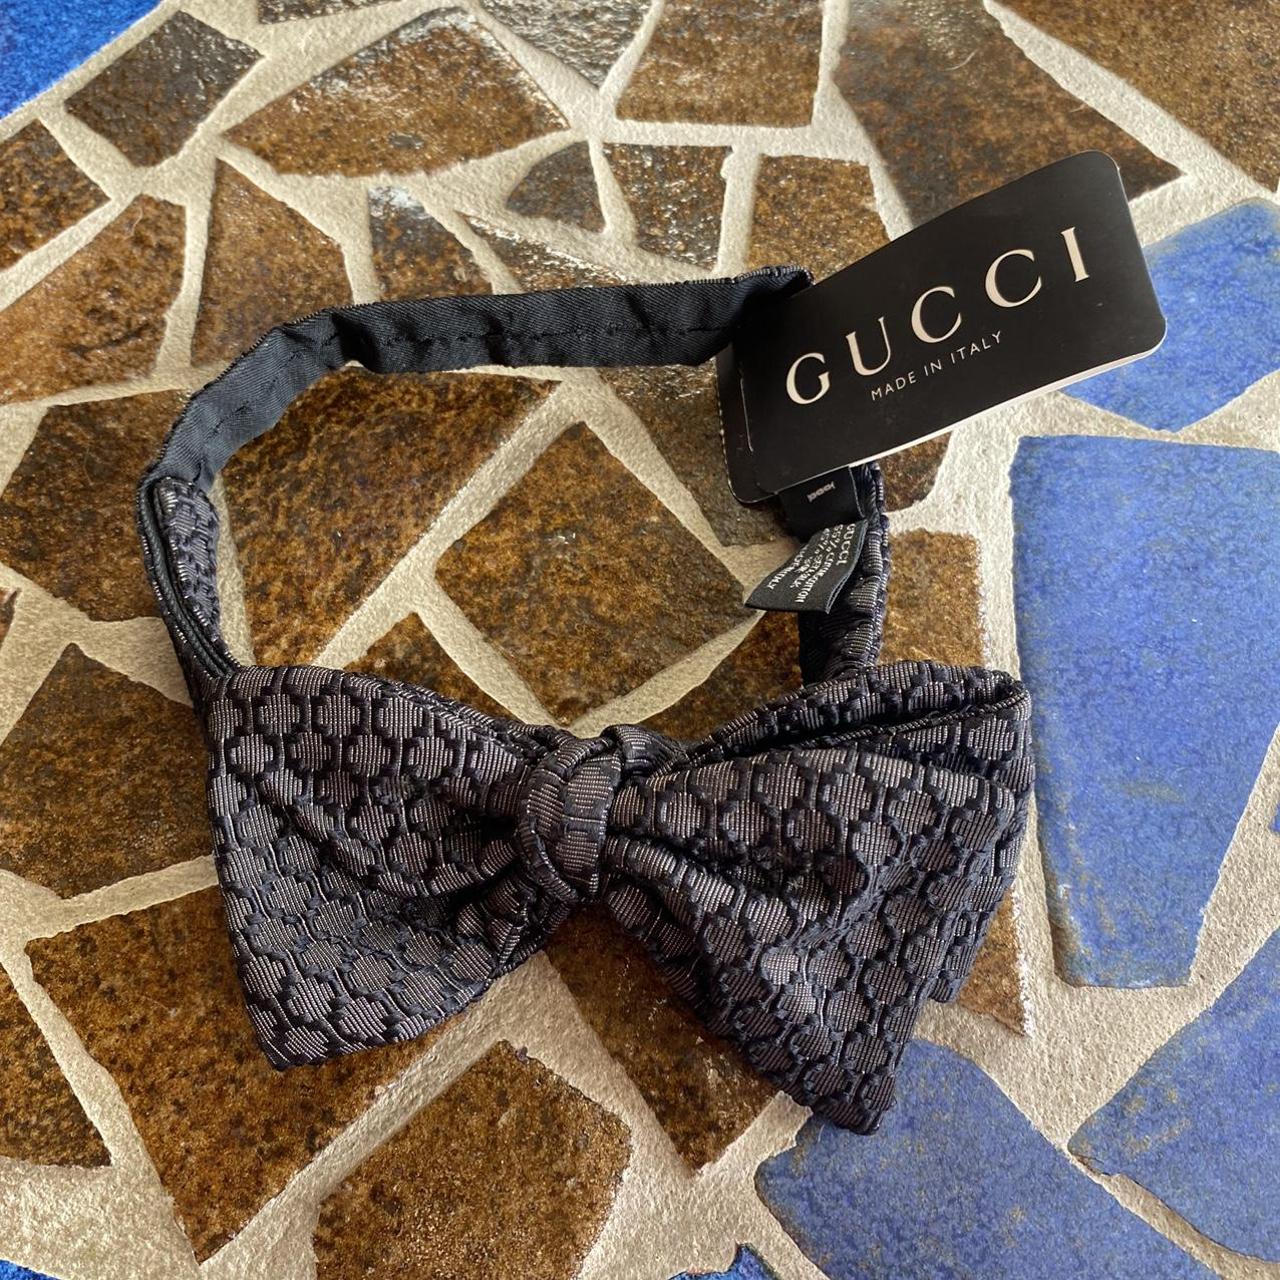 Gucci Bow Tie